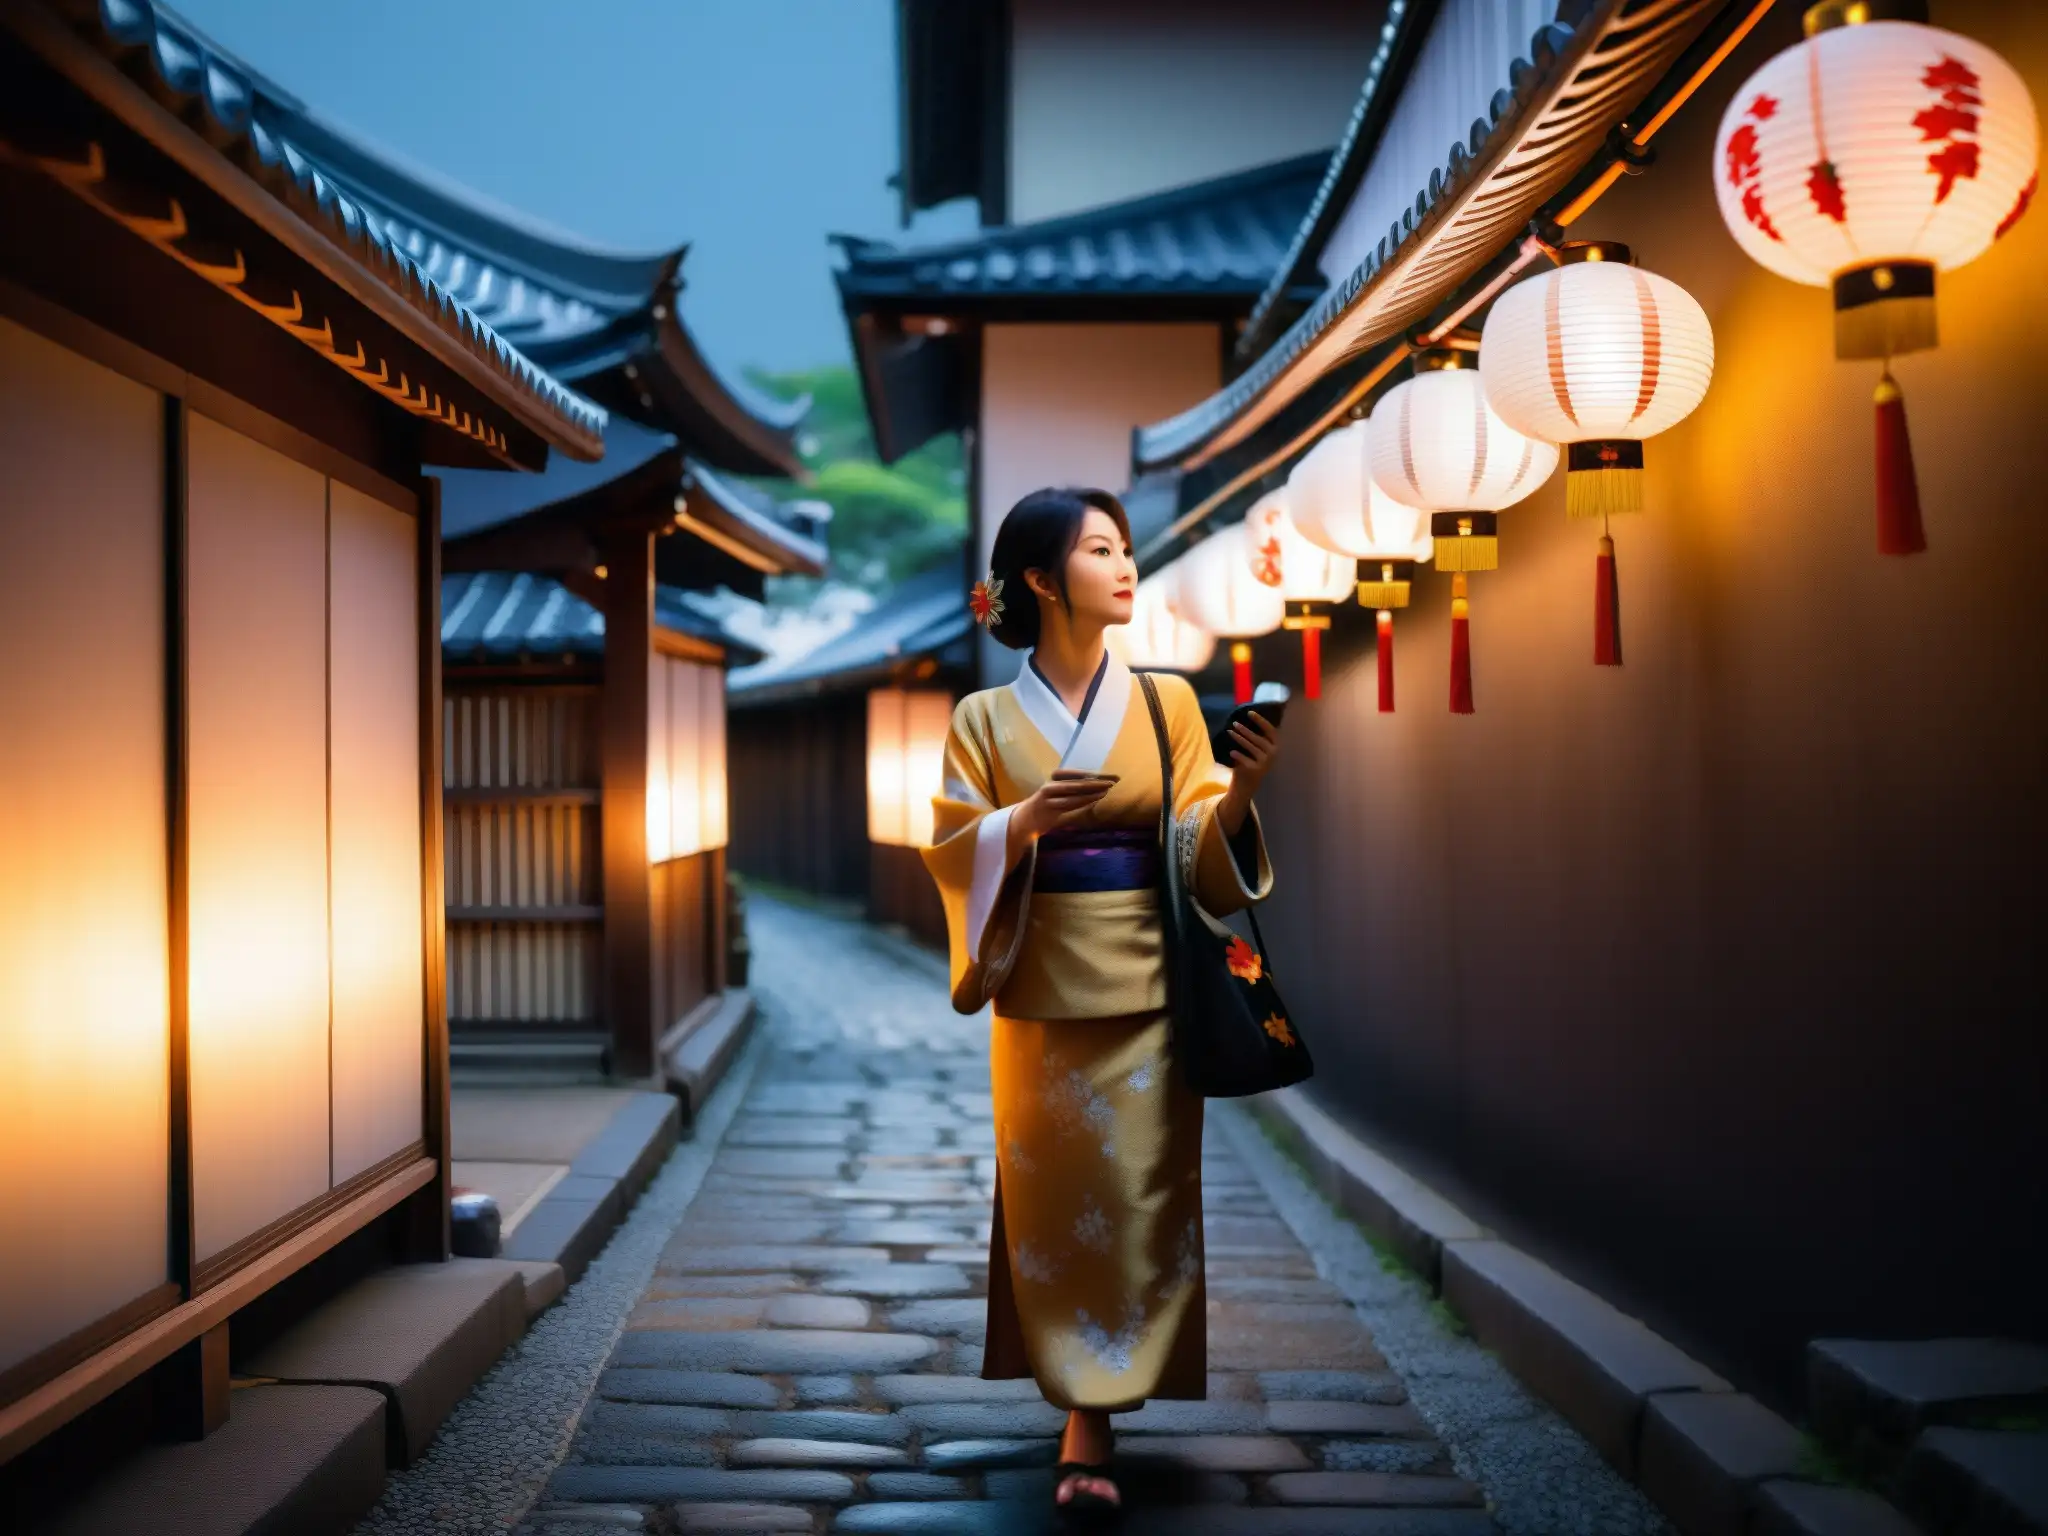 Un misterioso callejón japonés iluminado por linternas tradicionales, con una figura tomando un selfie